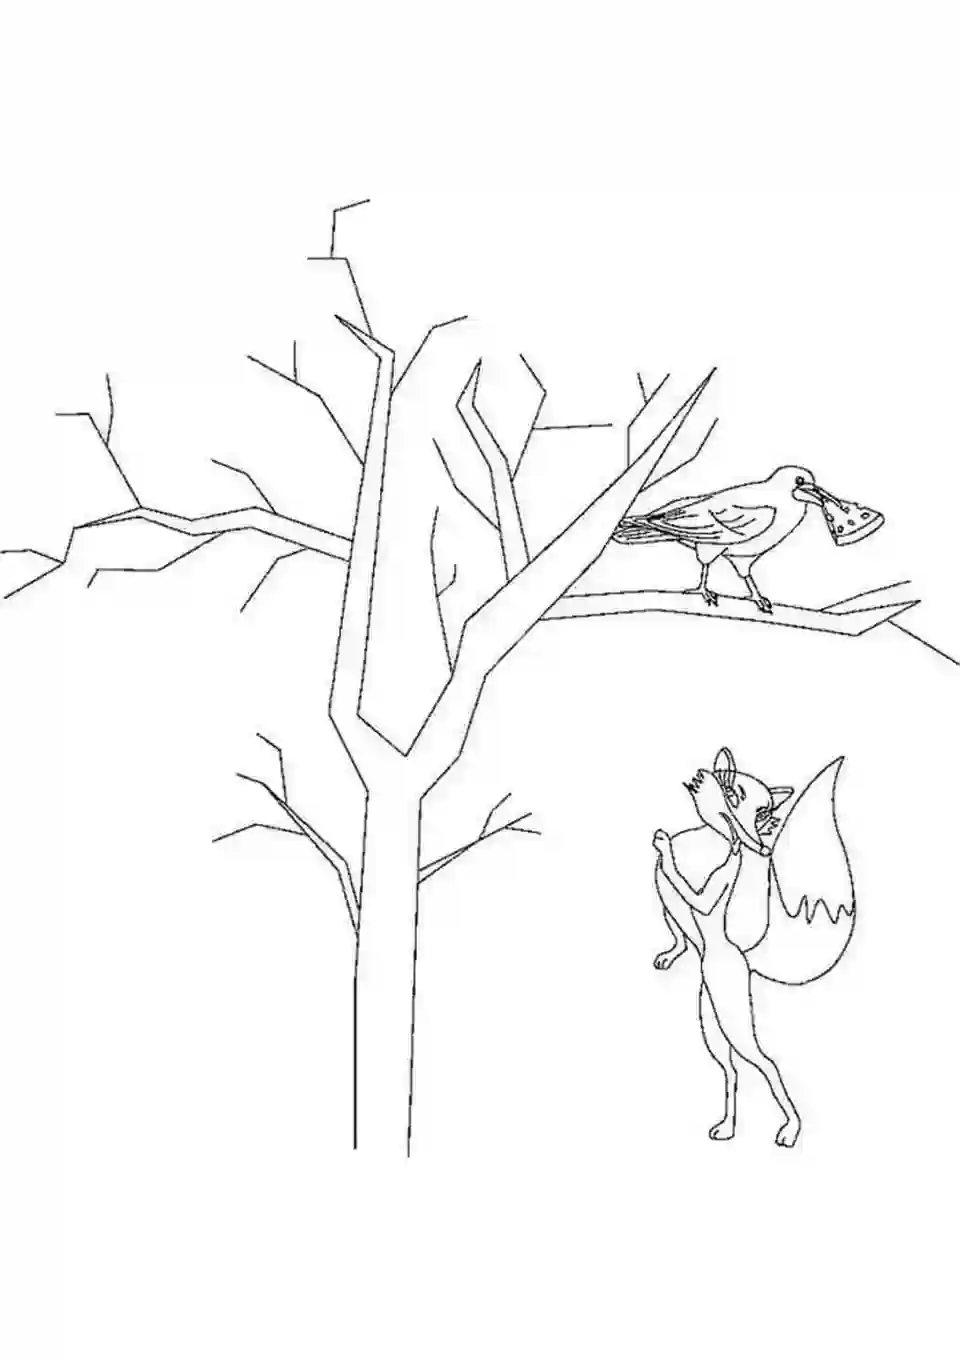 Иллюстрация к басне крылова ворона и лисица для срисовки